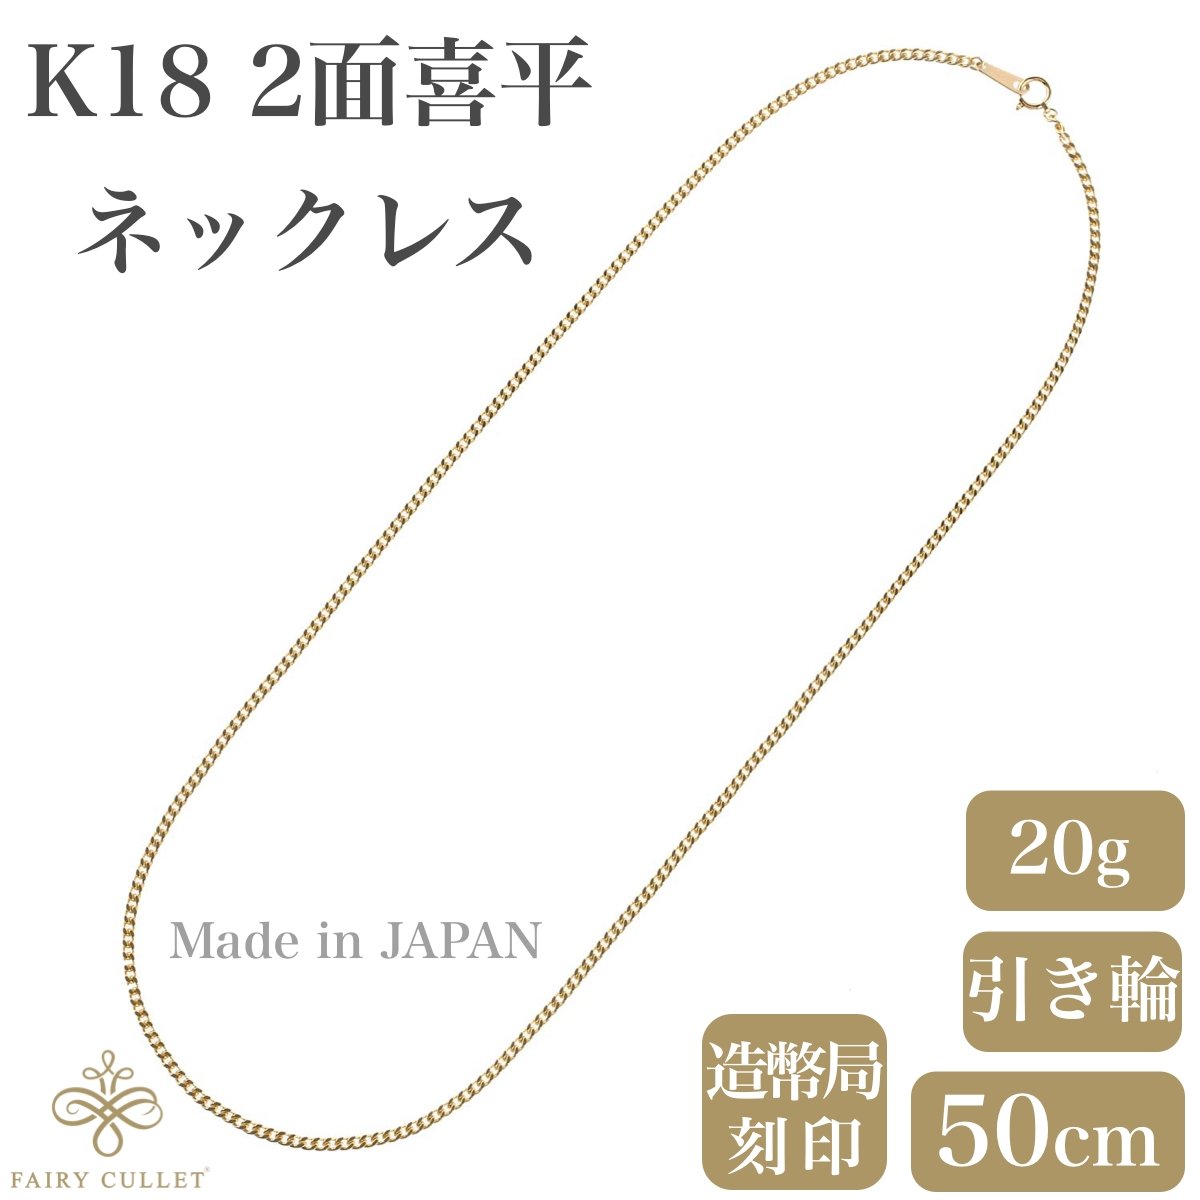 18金ネックレス K18 2面喜平チェーン 日本製 検定印 20g 50cm 引き輪 